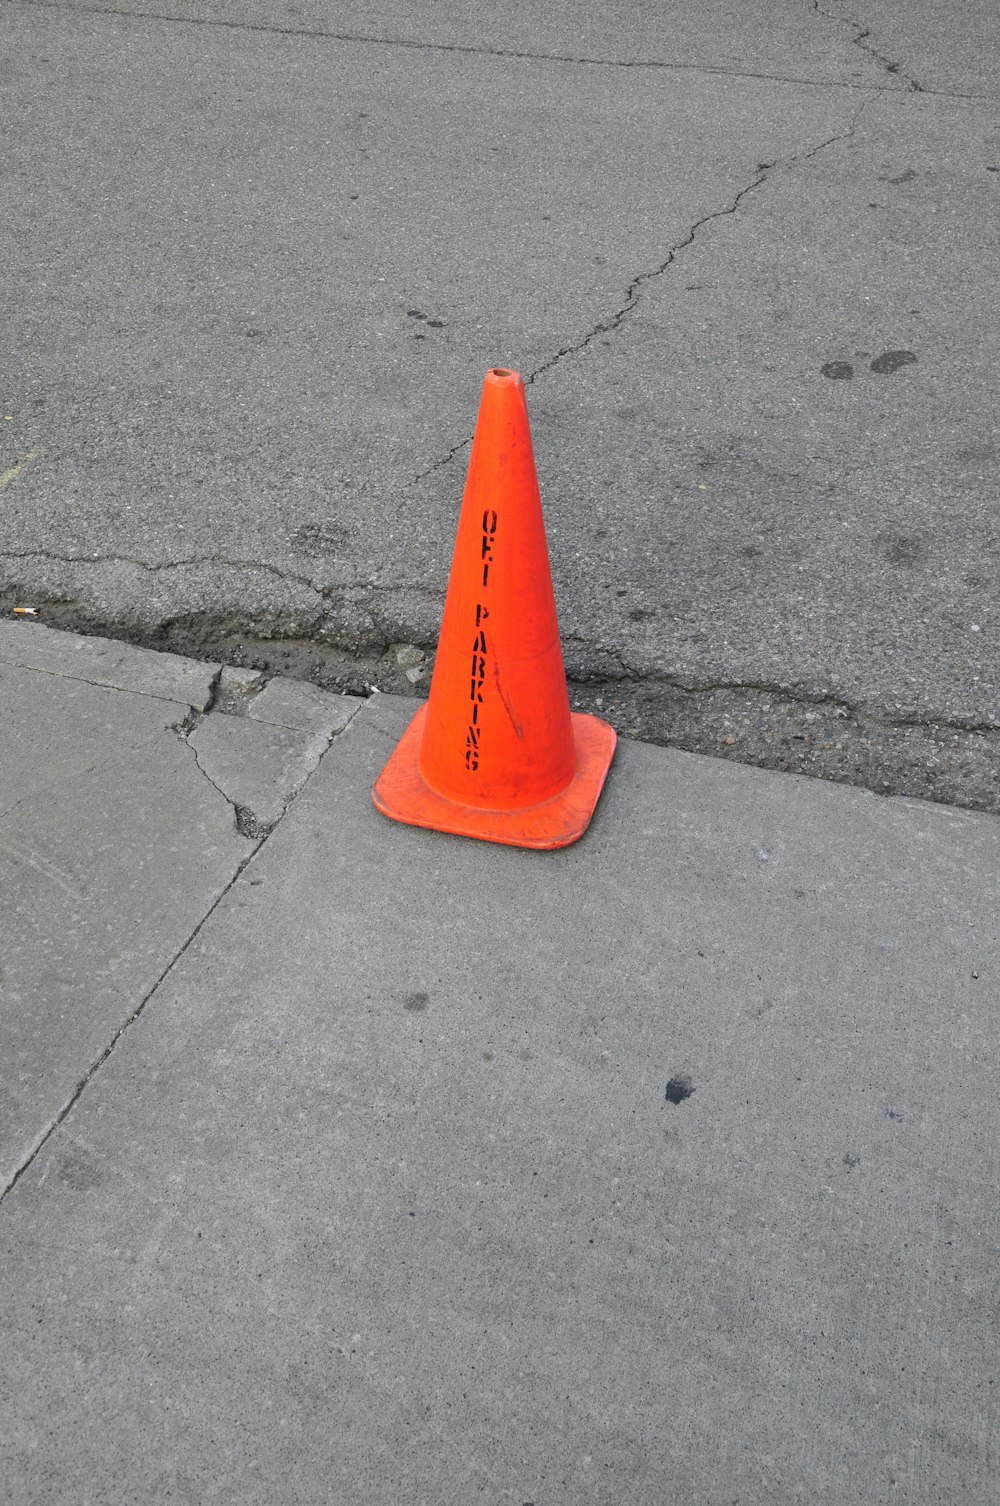 orange traffic cone on gray concrete pavement